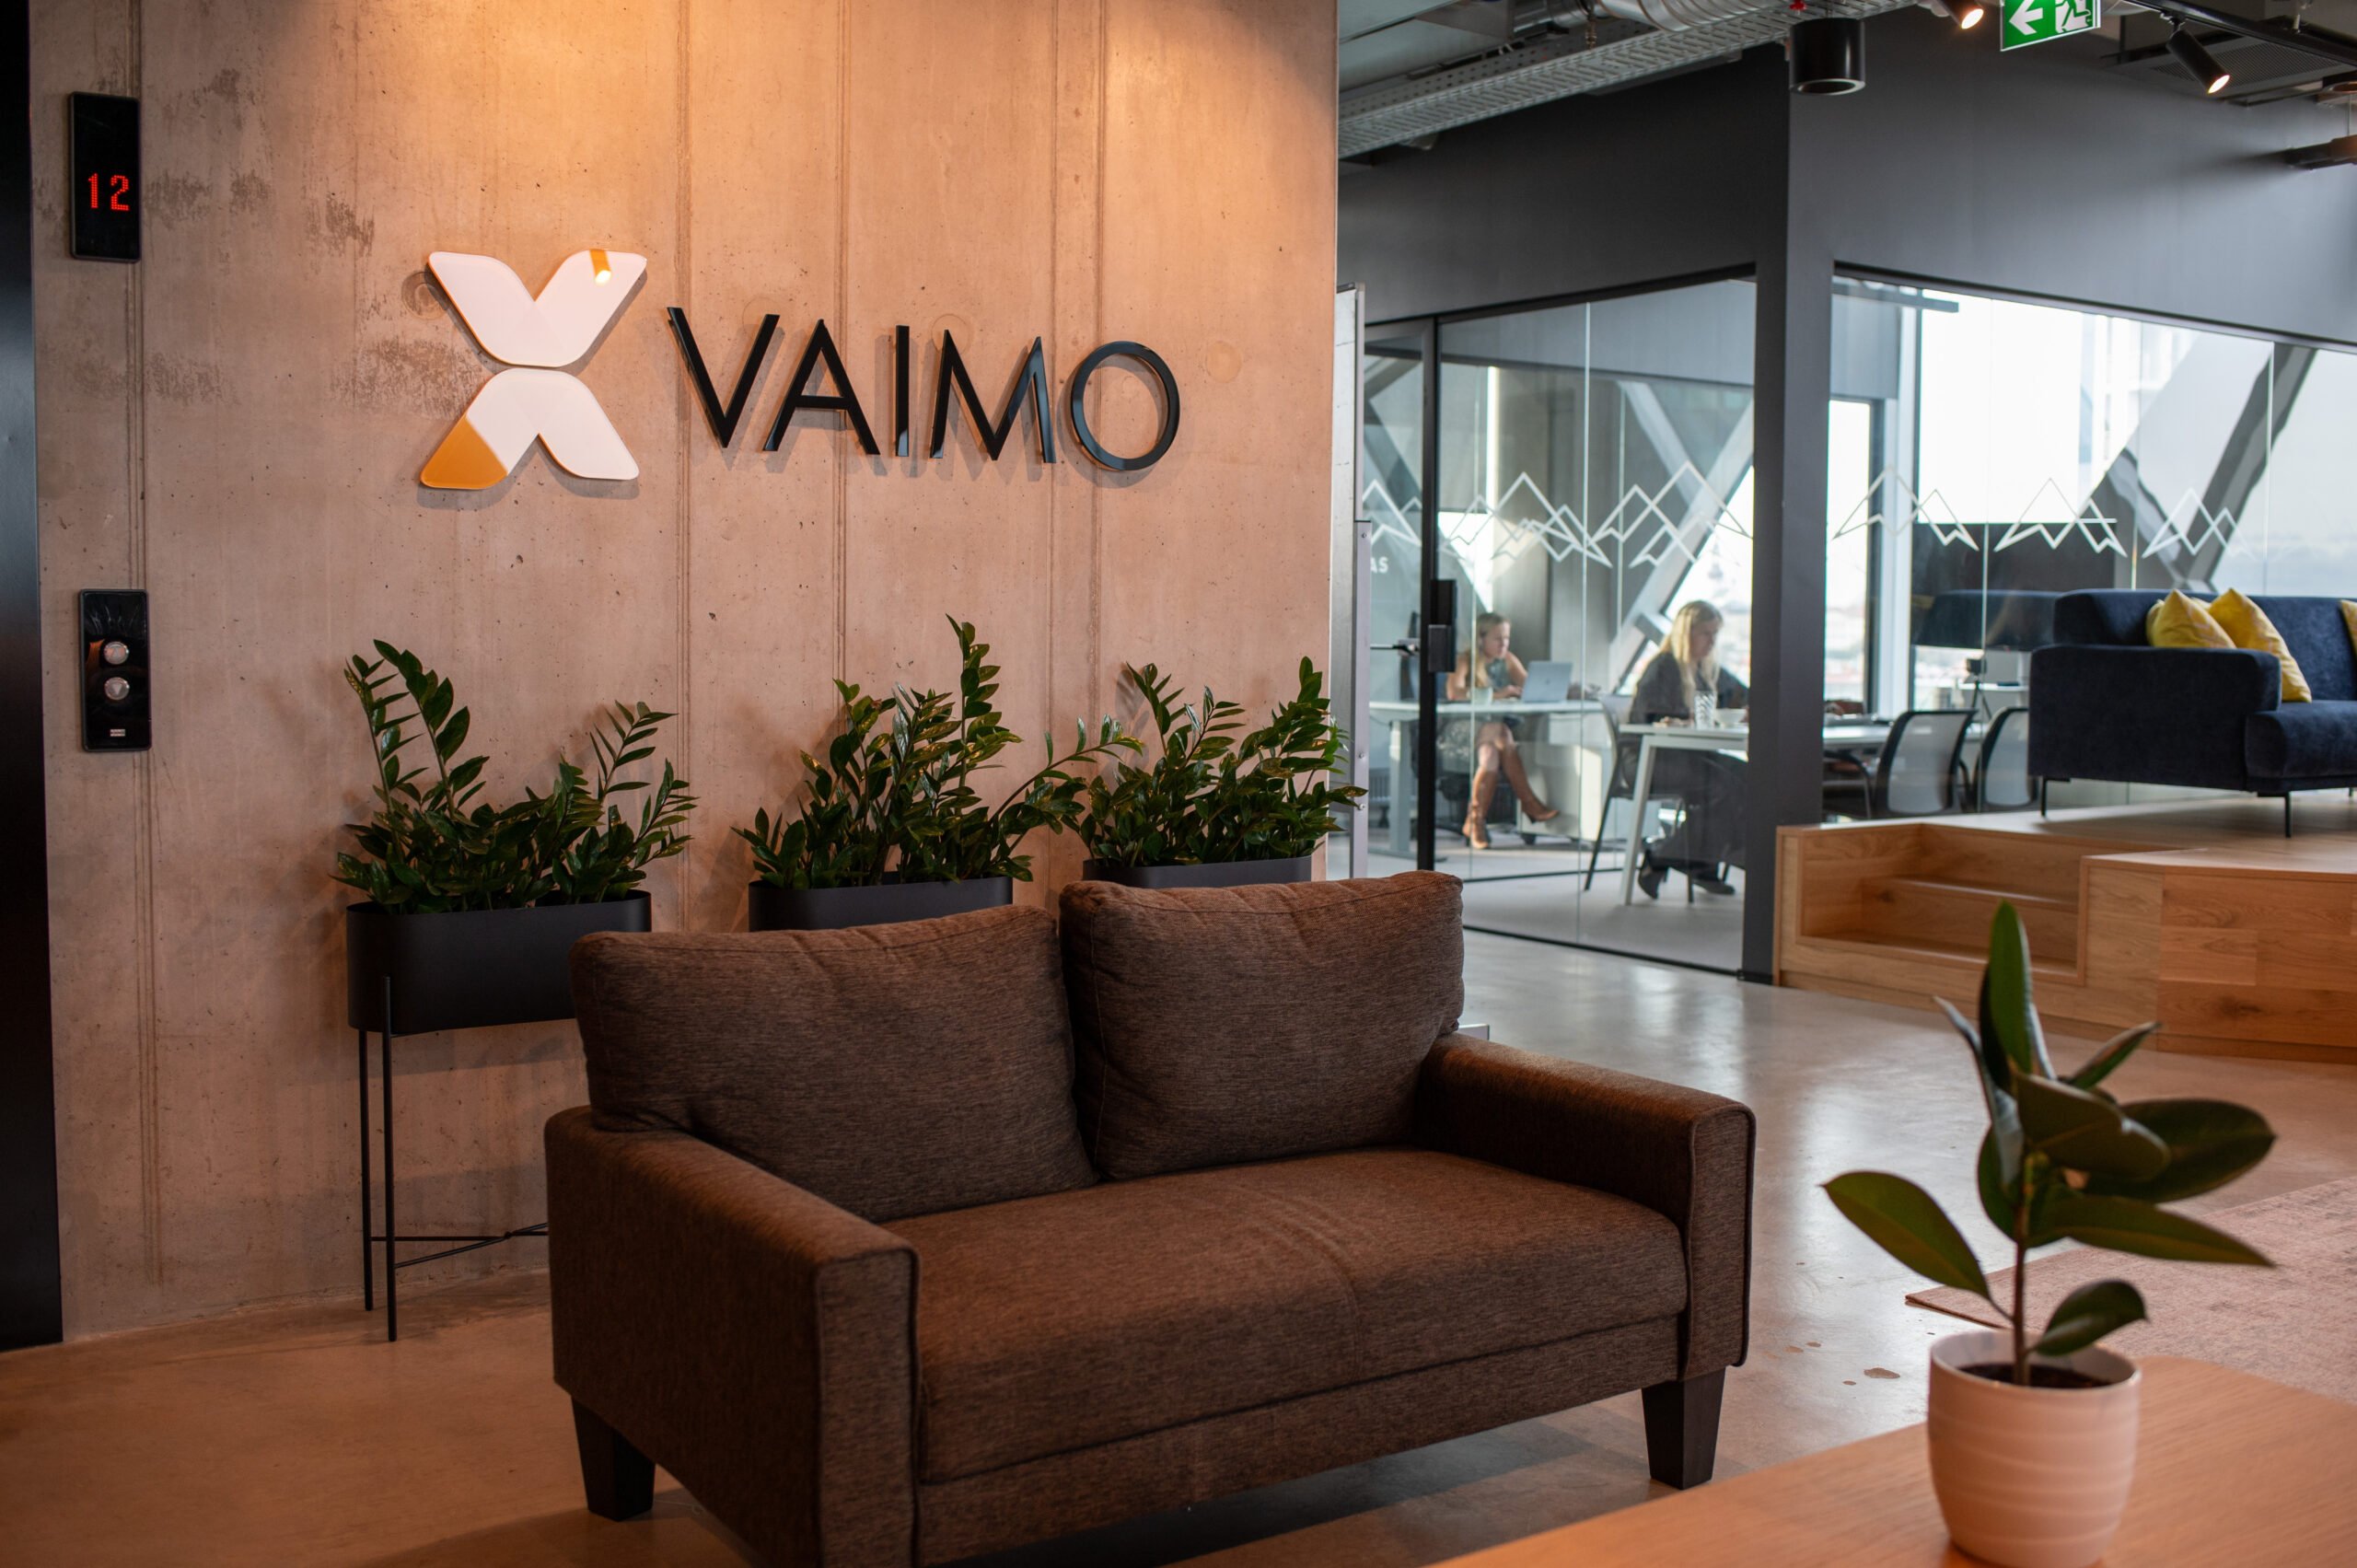 Image of Vaimo office in Tallinn